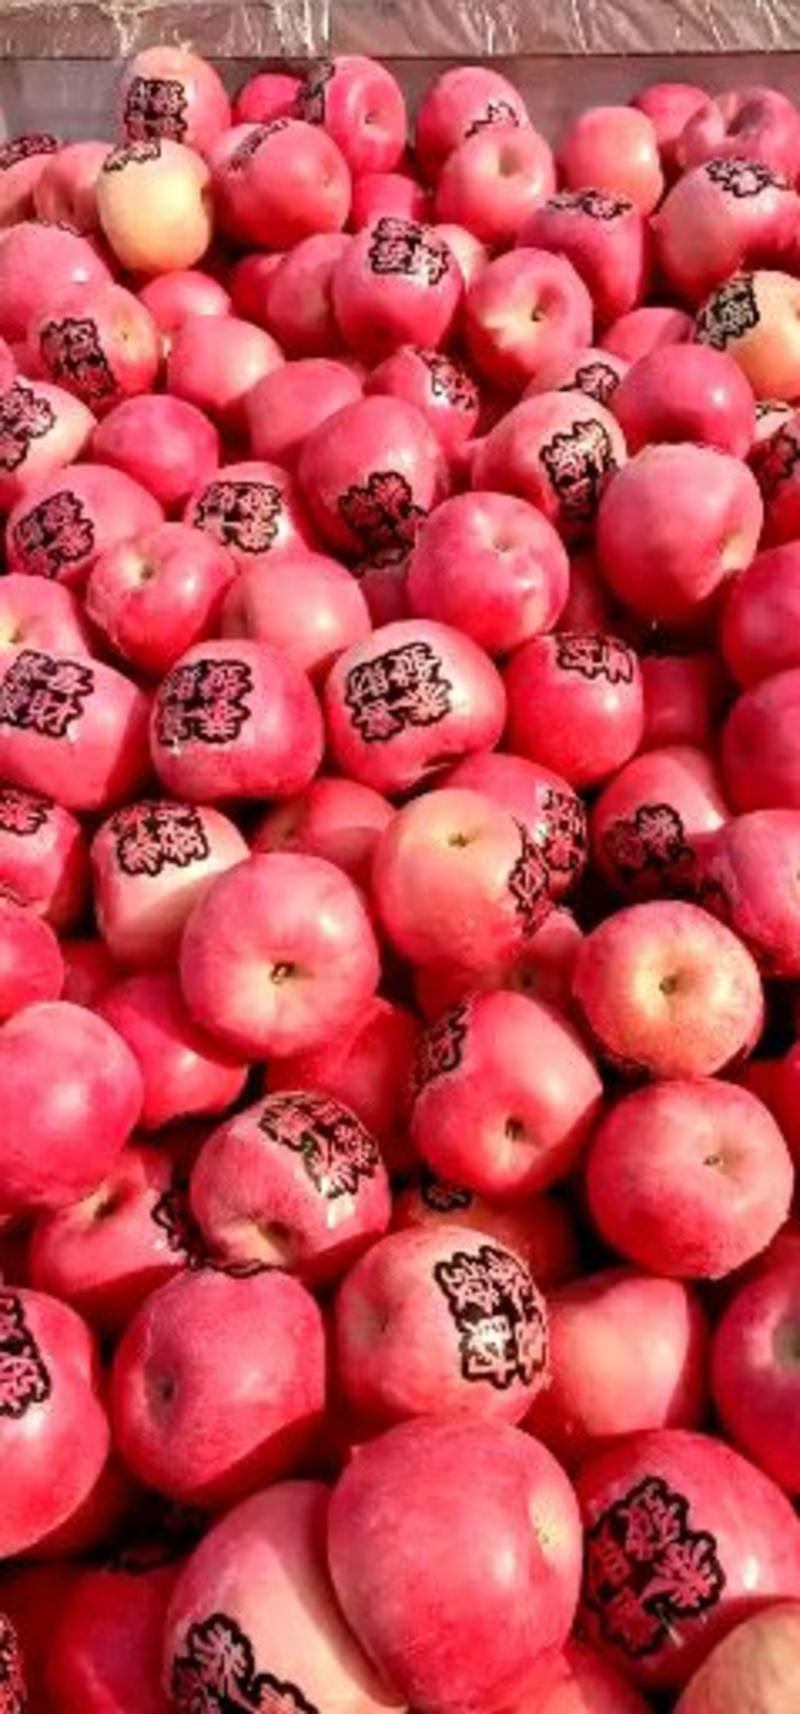 红富士苹果大量下，又甜又脆又好吃口干好甜欢迎客户前来选购